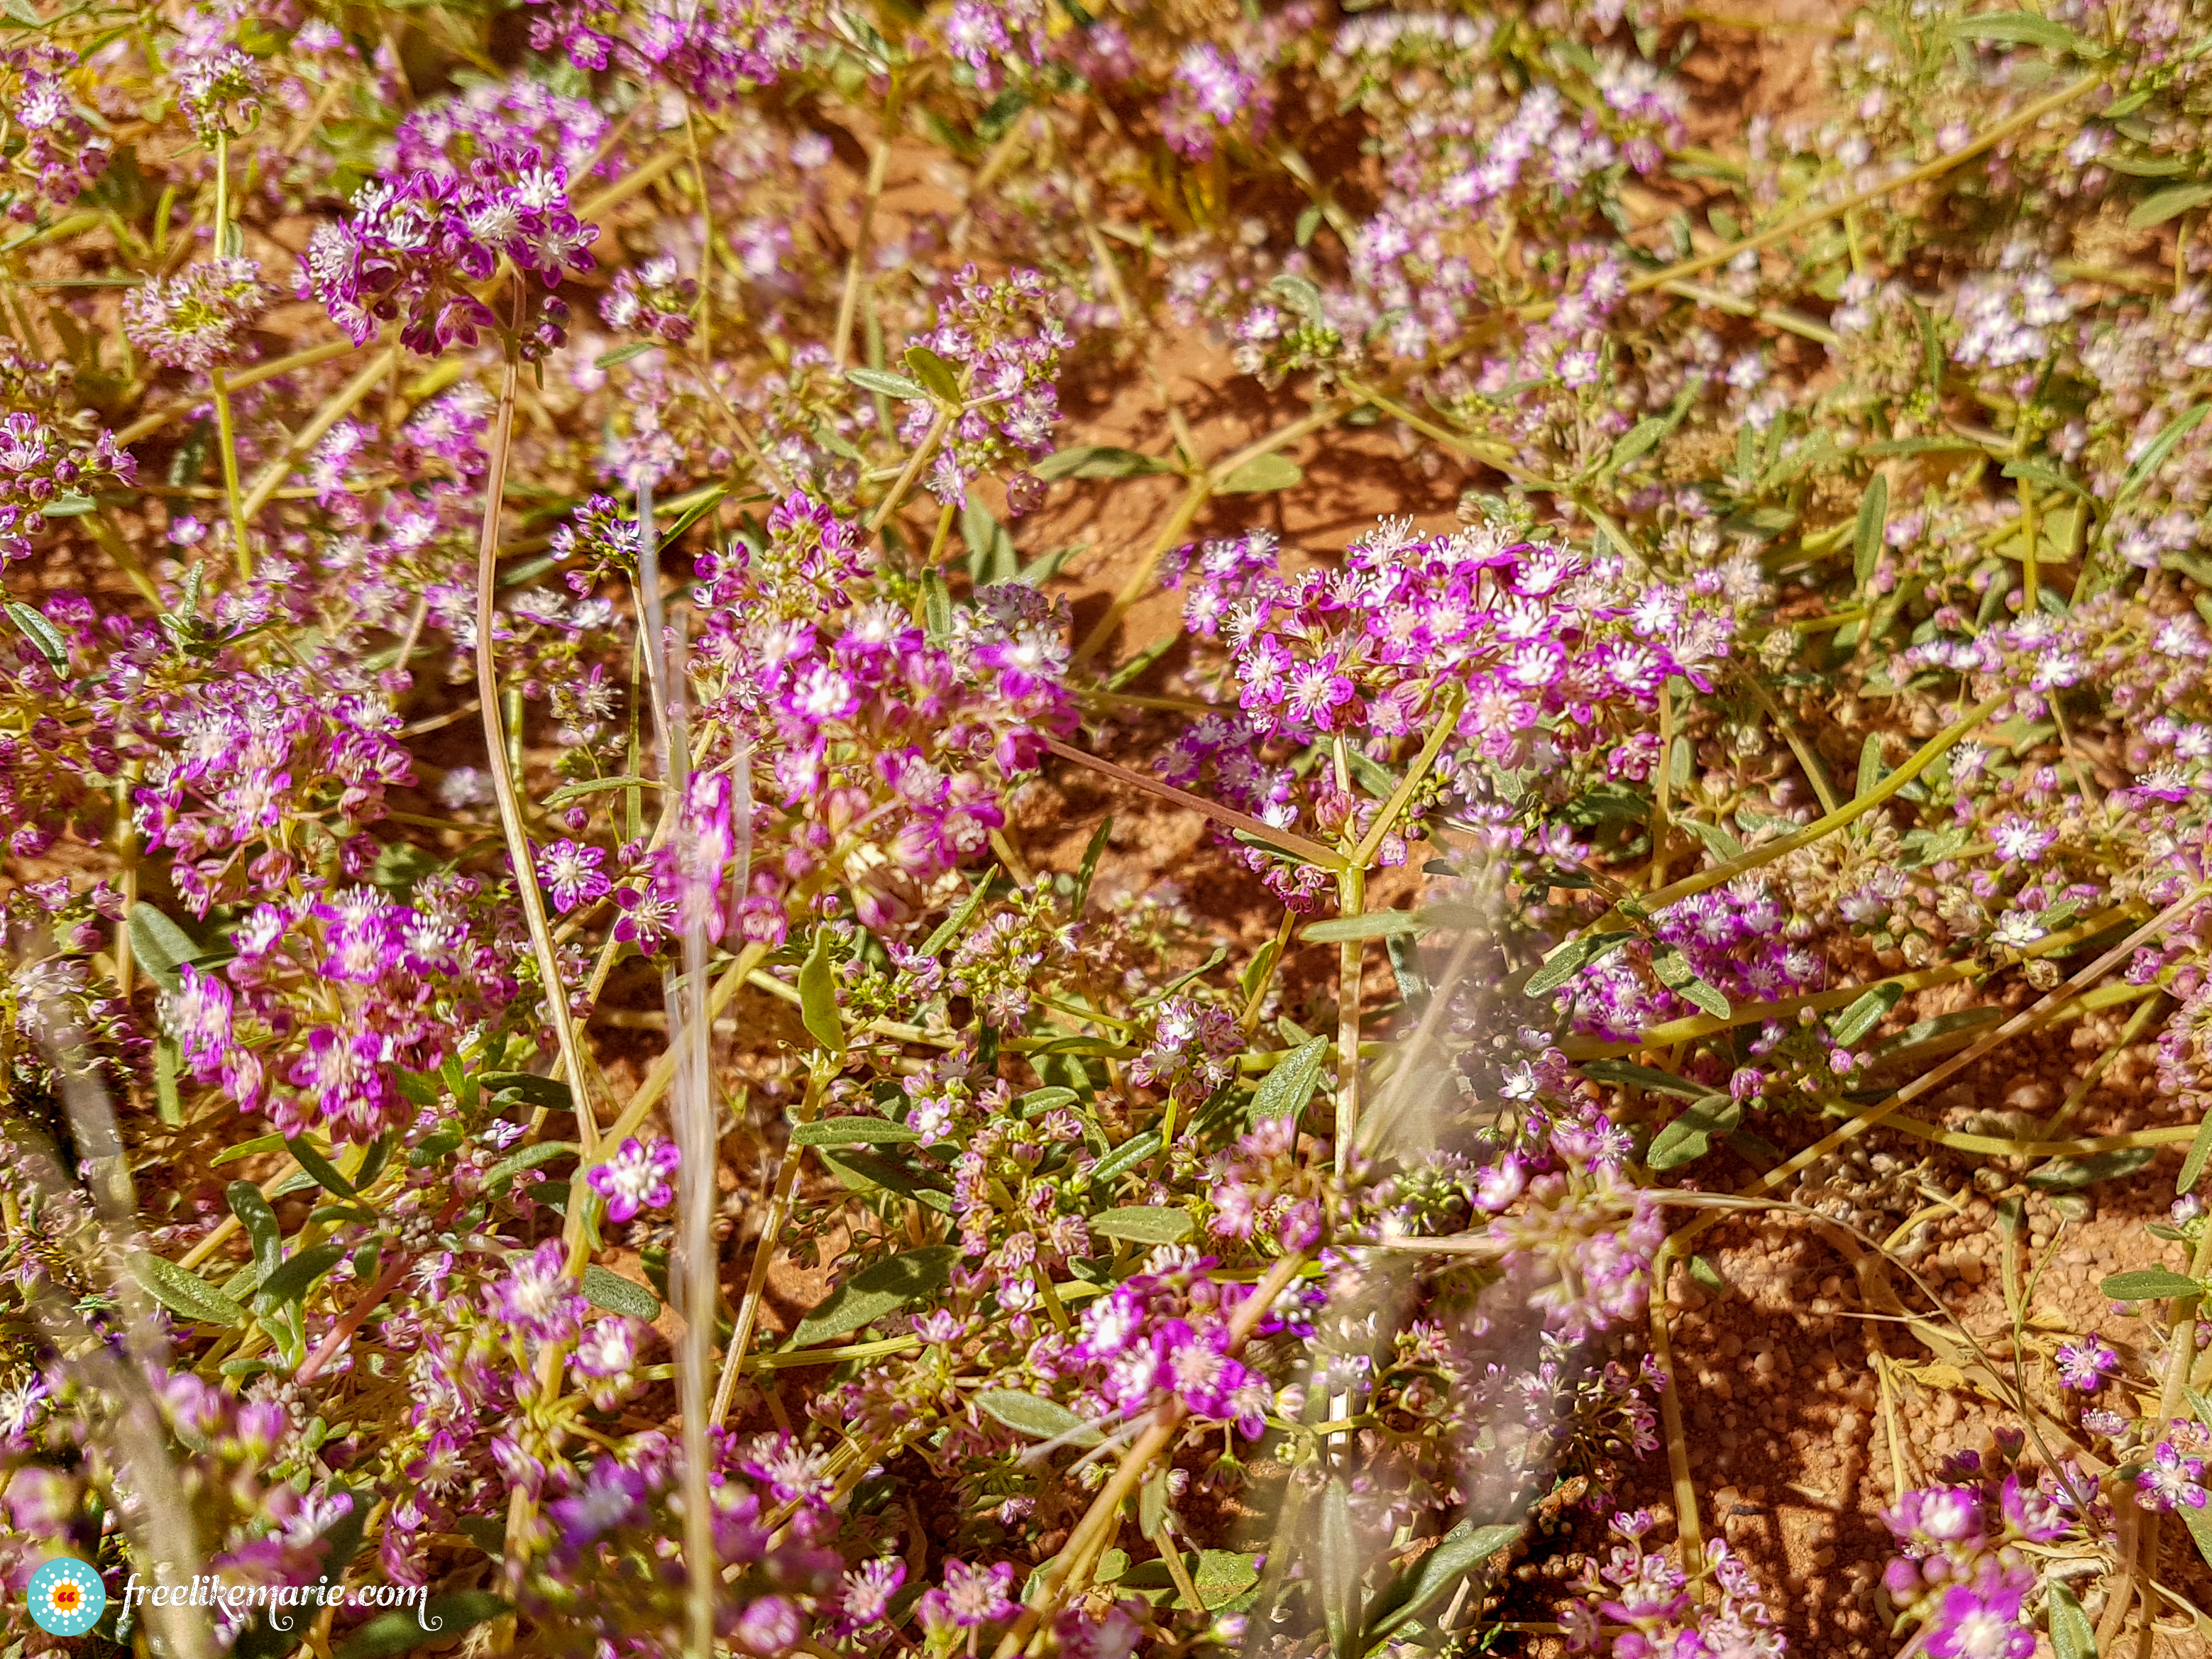 Plant in the Deadvlei Desert